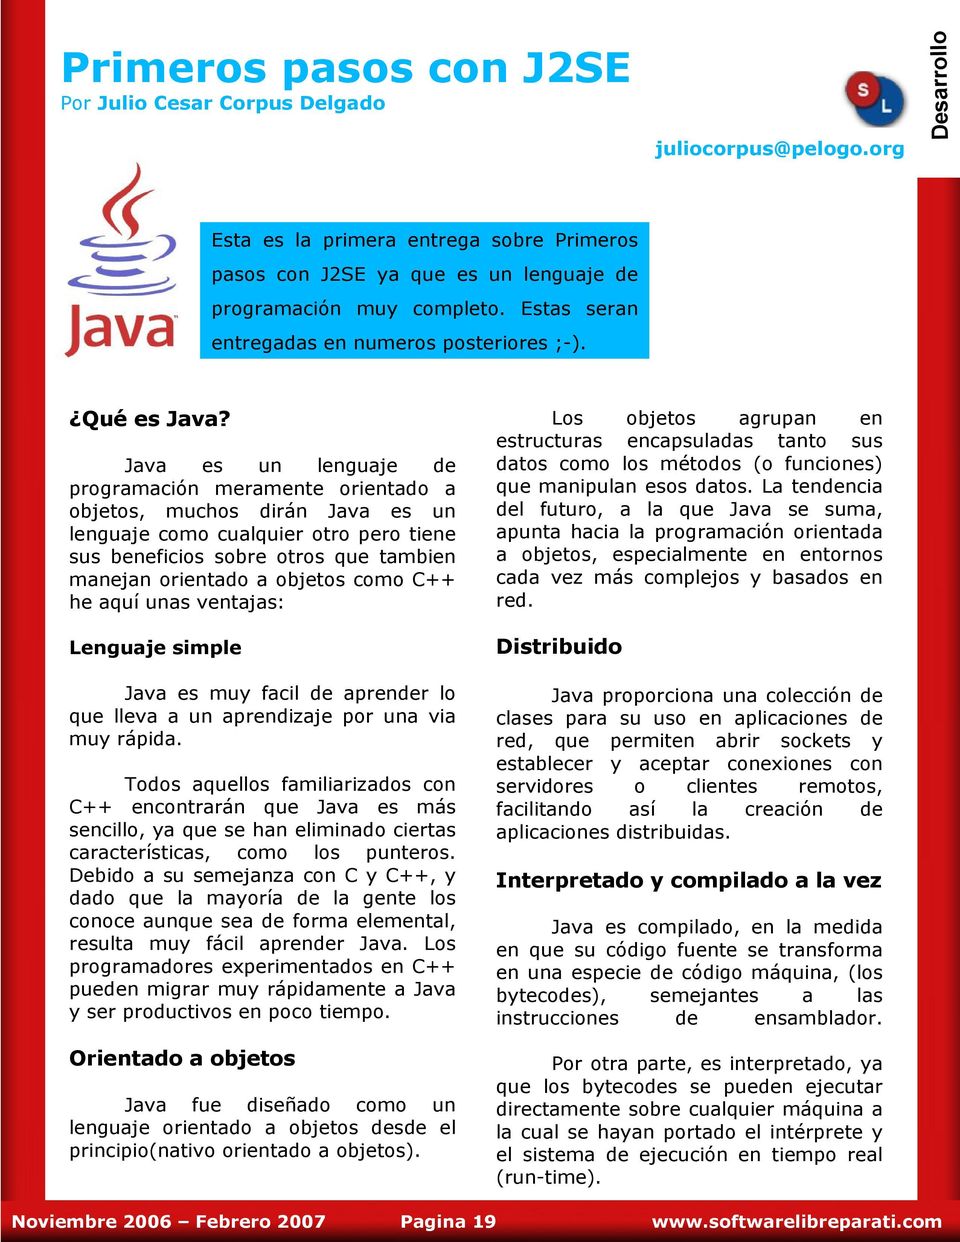 Java es un lenguaje programación meramente orientado a objetos, muchos dirán Java es un lenguaje como cualquier otro pero tiene sus beneficios sobre otros que tambien manejan orientado a objetos como